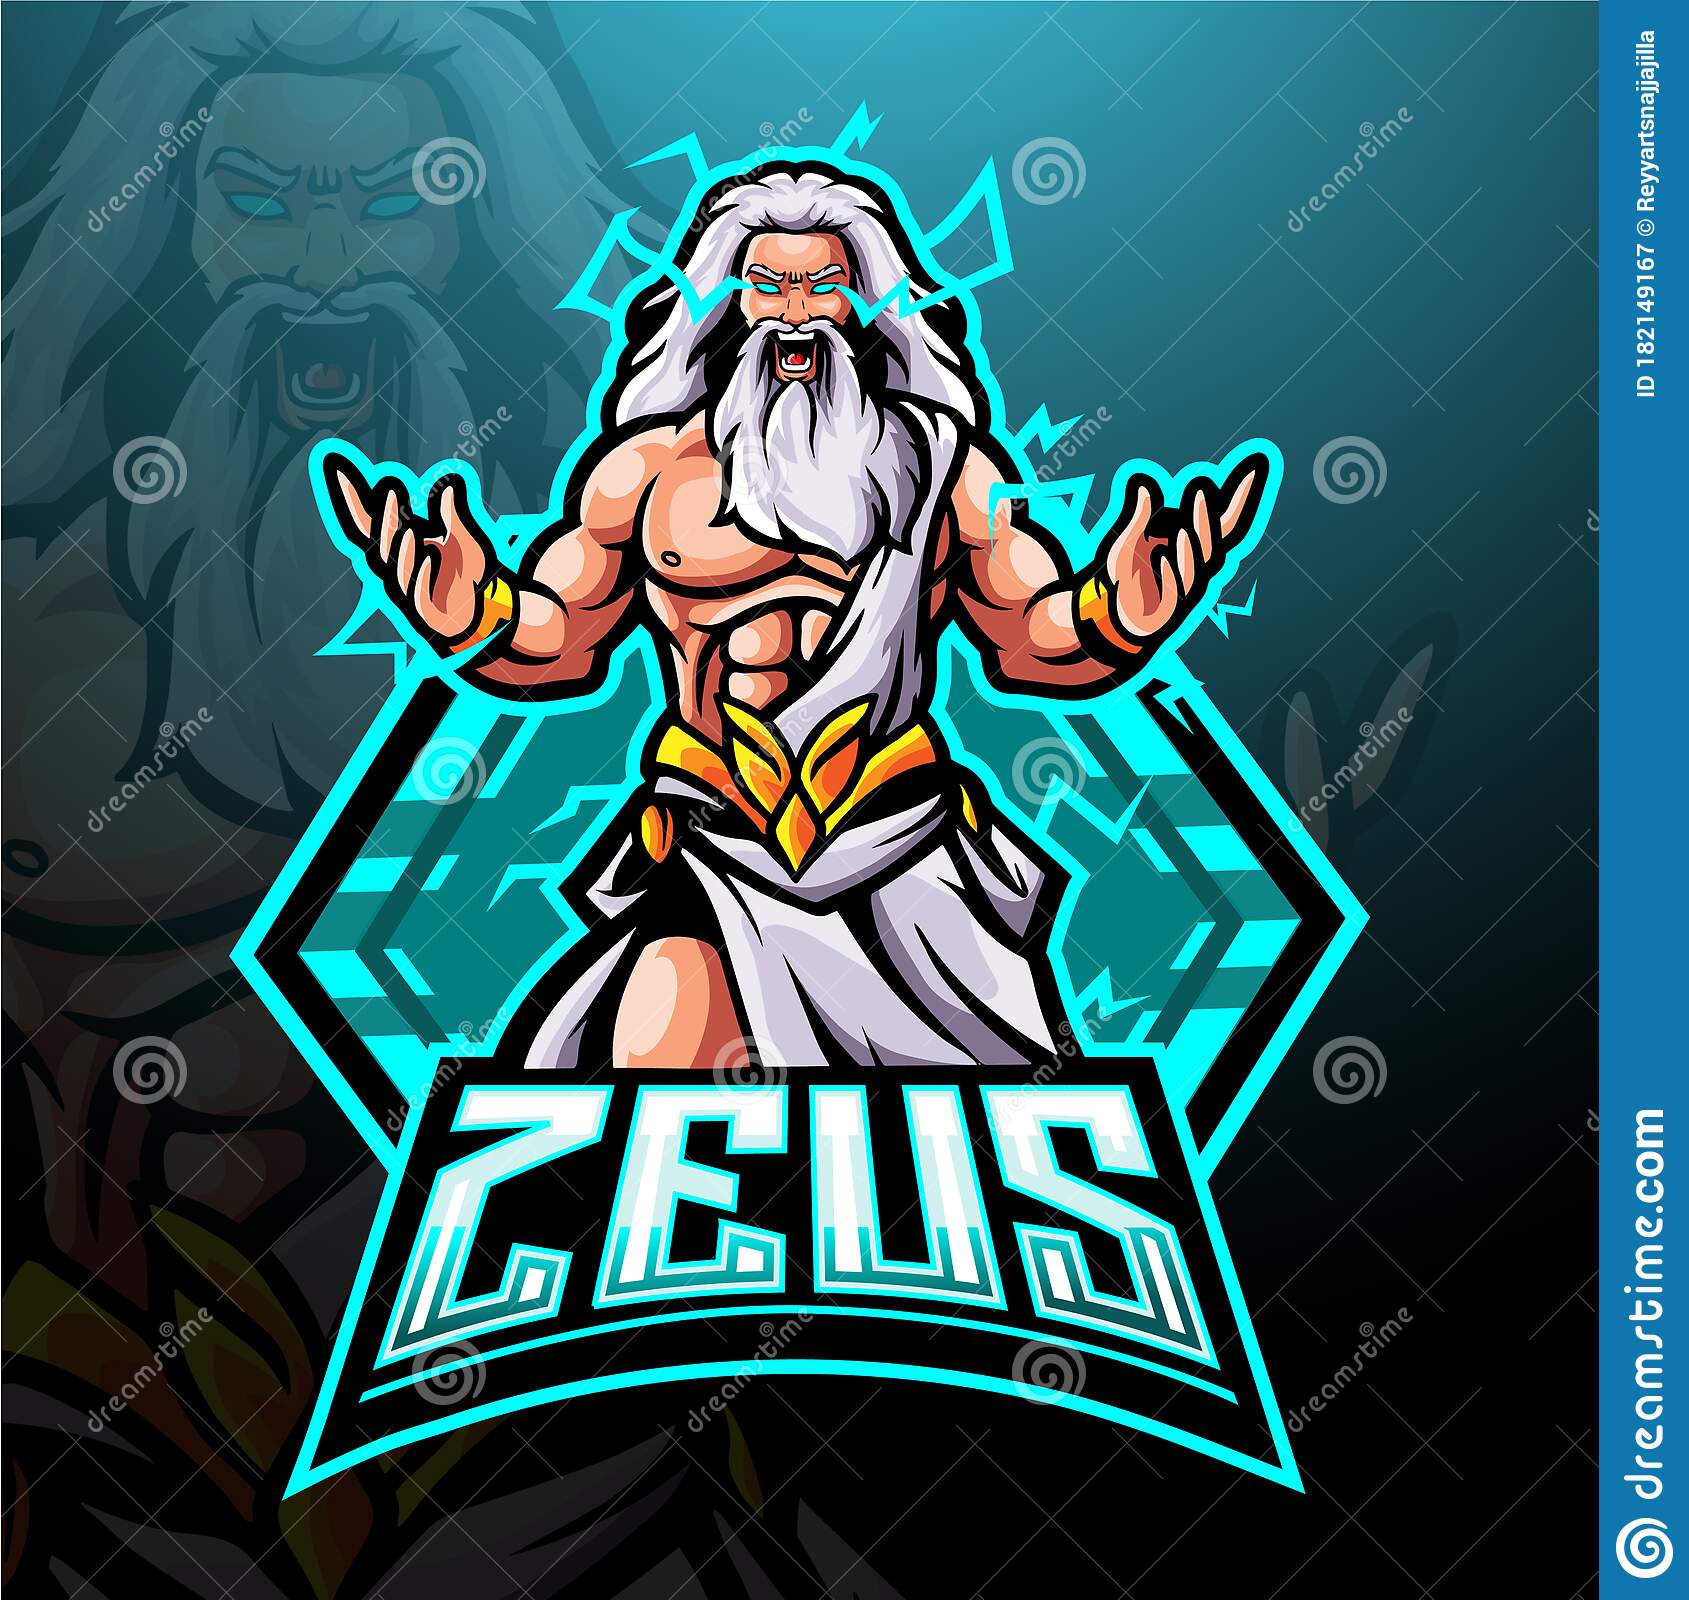 52+ Zeus Gaming Logo